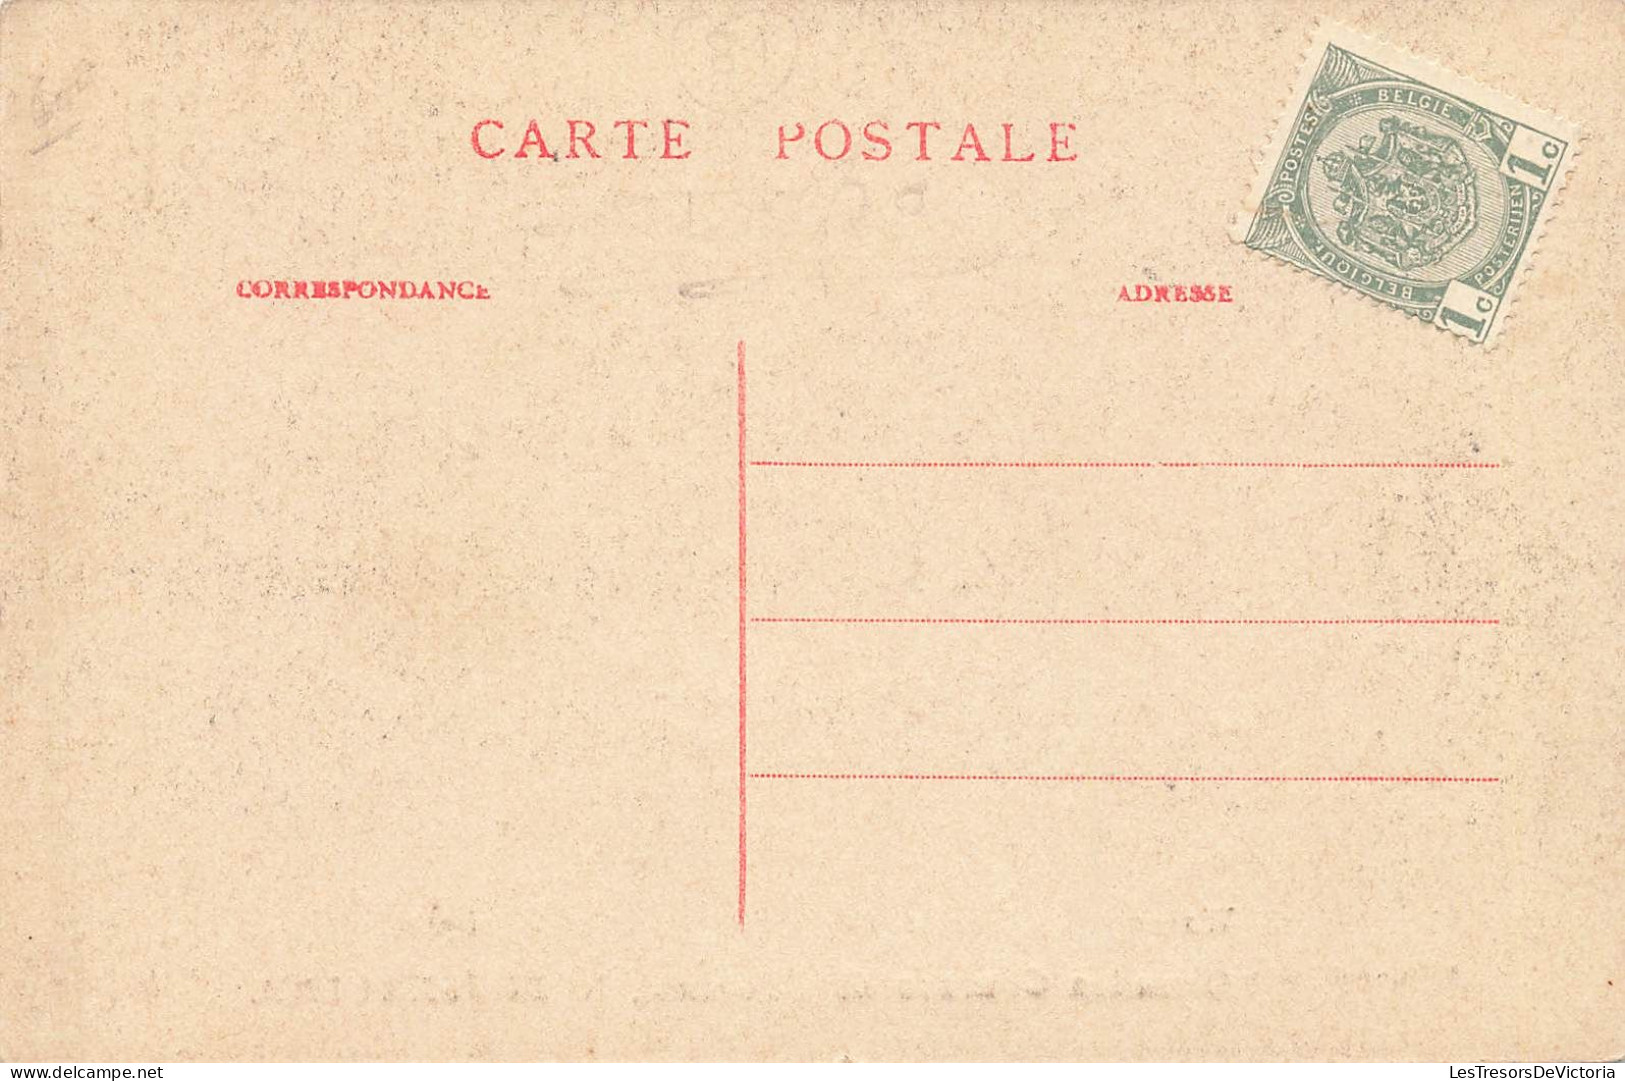 Belgique - Waremme - Courses Hippique - Les Tribunes - E. Dumont - Carte Postale Ancienne - Waremme